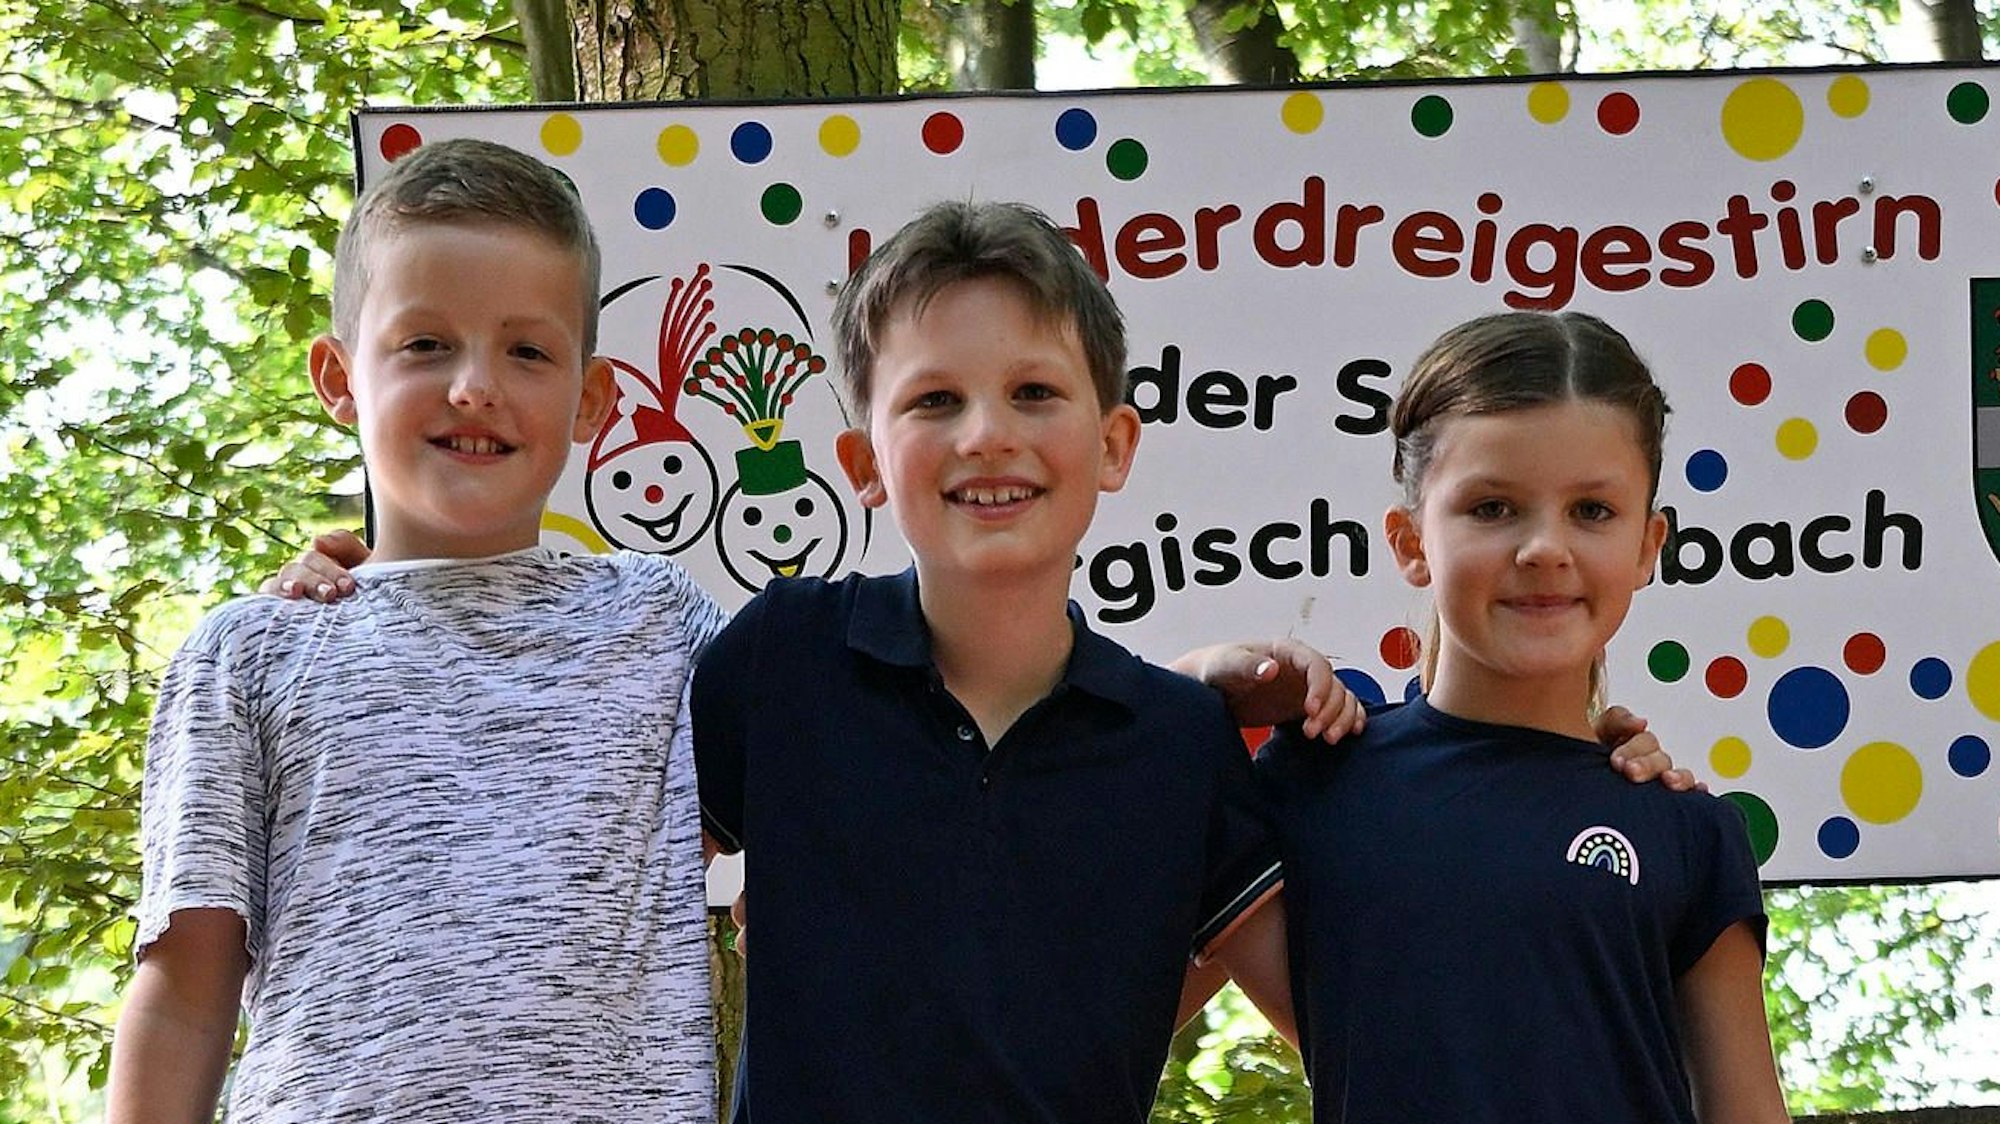 Das angehende Kinderdreigestirn der Kreisstadt Bergisch Gladbach steht im Wald vor einem Schild mit der Aufschrift „Kinderdreigestirn der Stadt Bergisch Gladbach“.